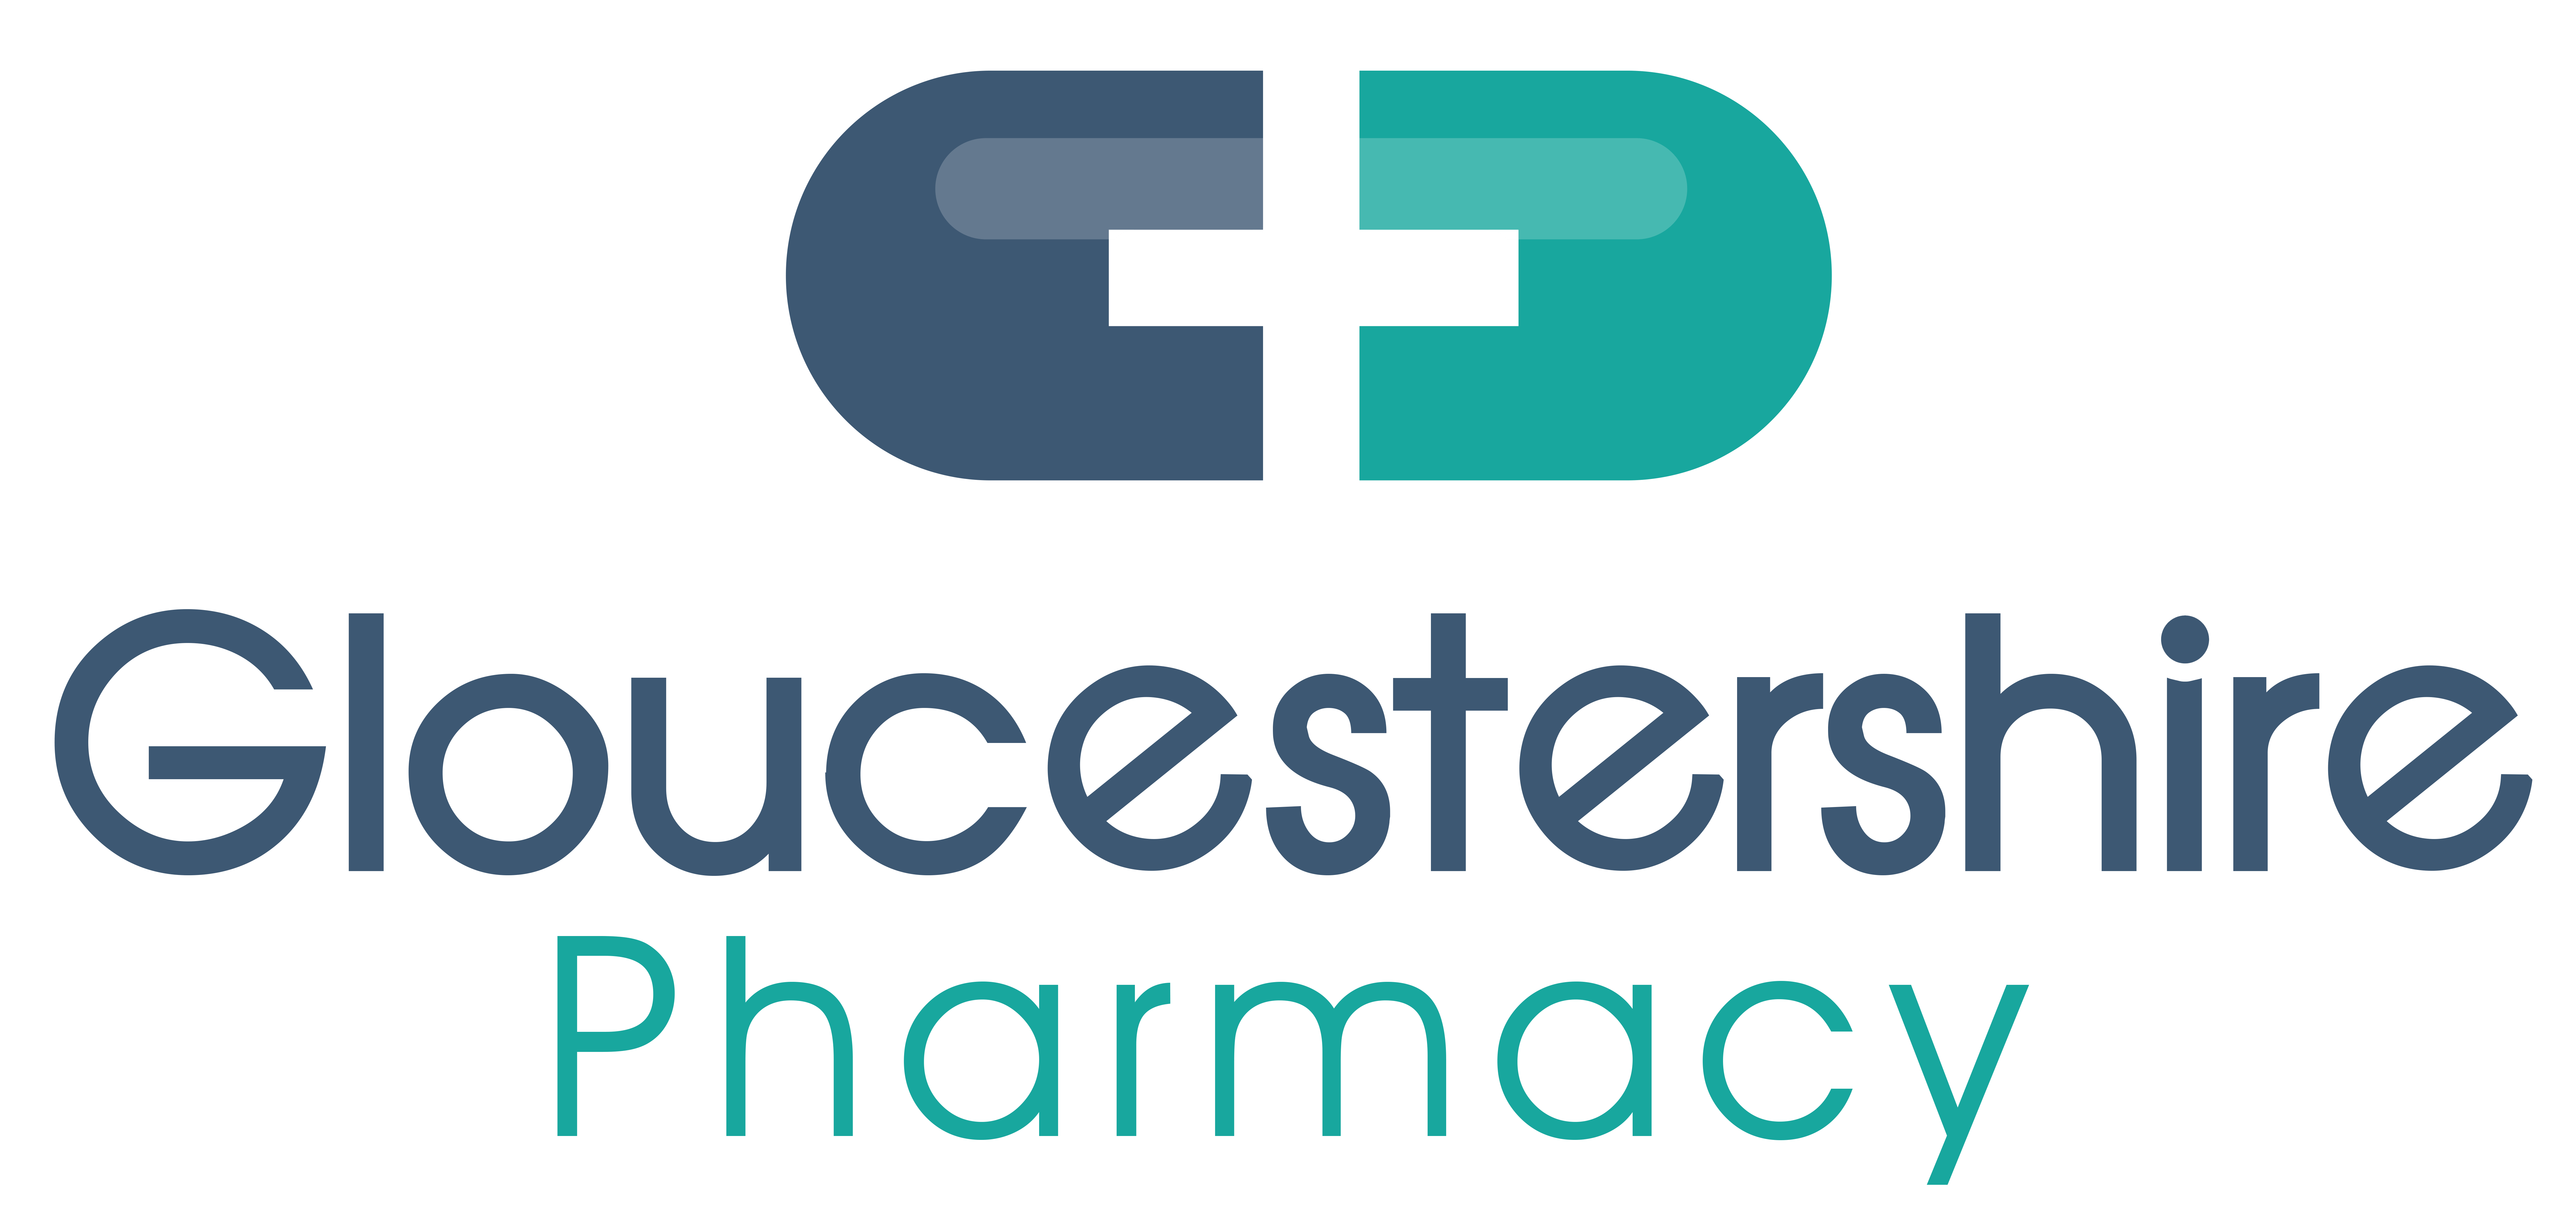 Gloucestershire Pharmacy